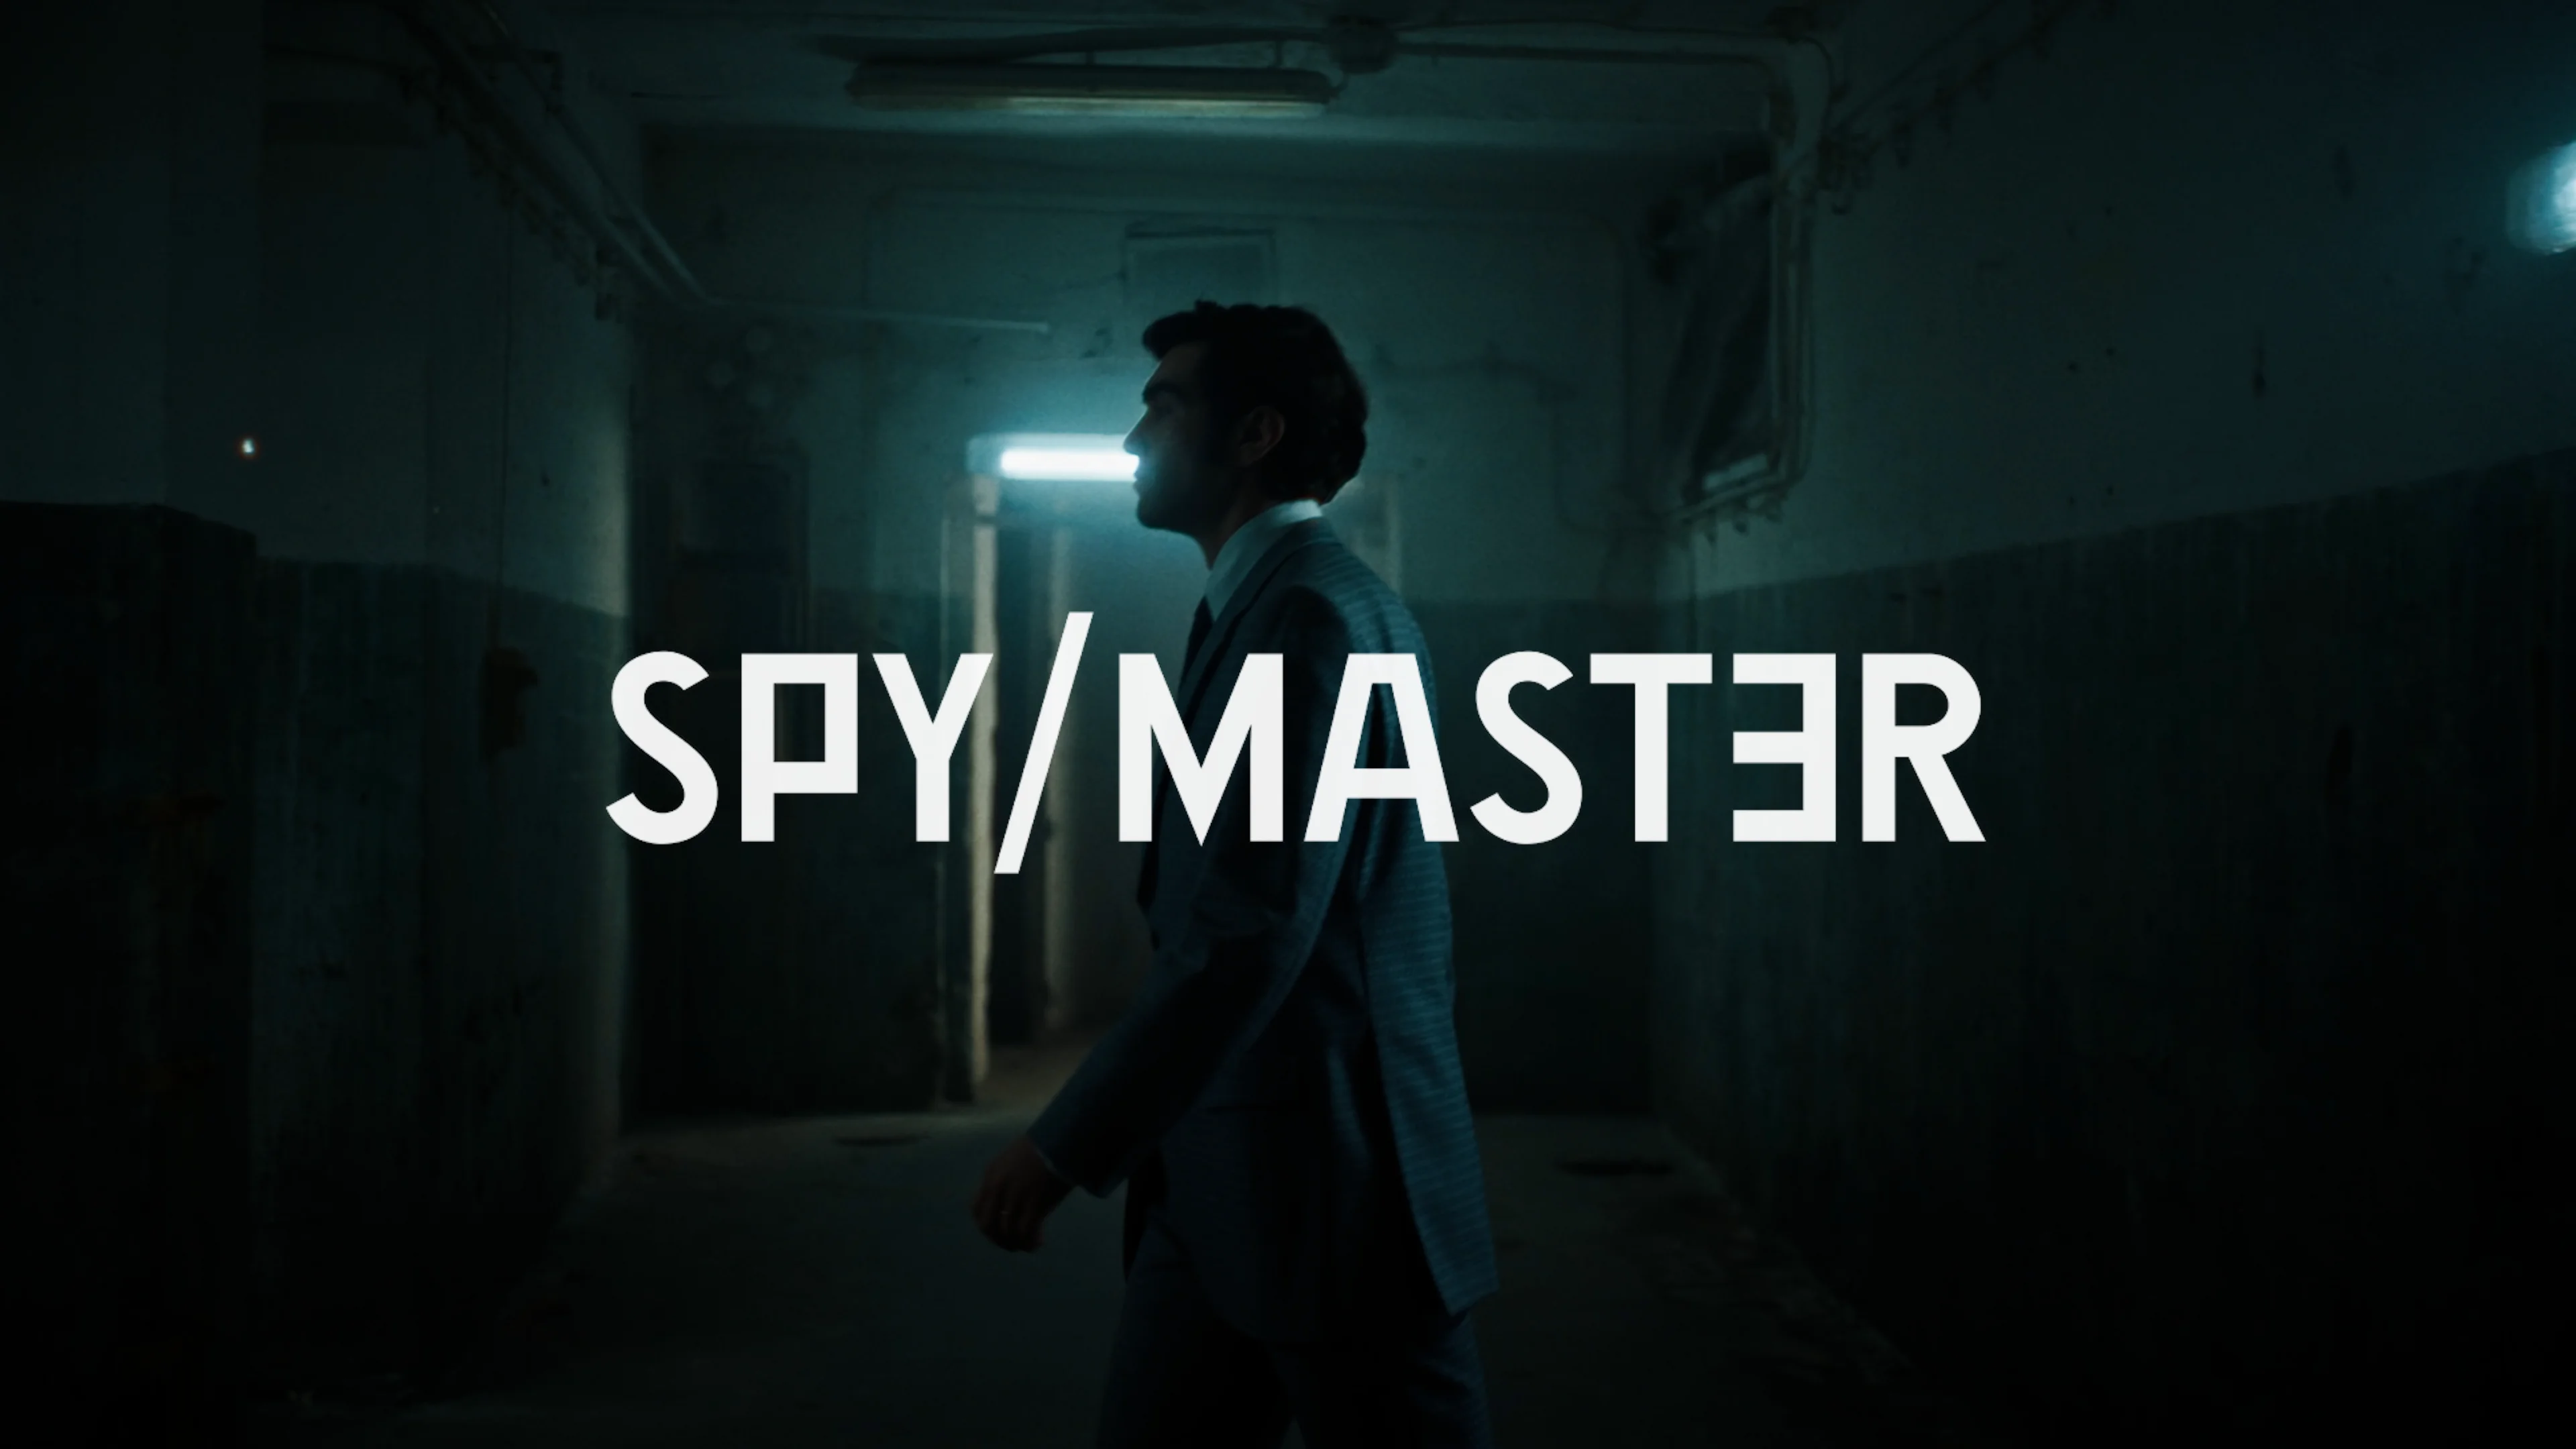 HBO Max divulga trailer da série de drama Spy/Master. Confira